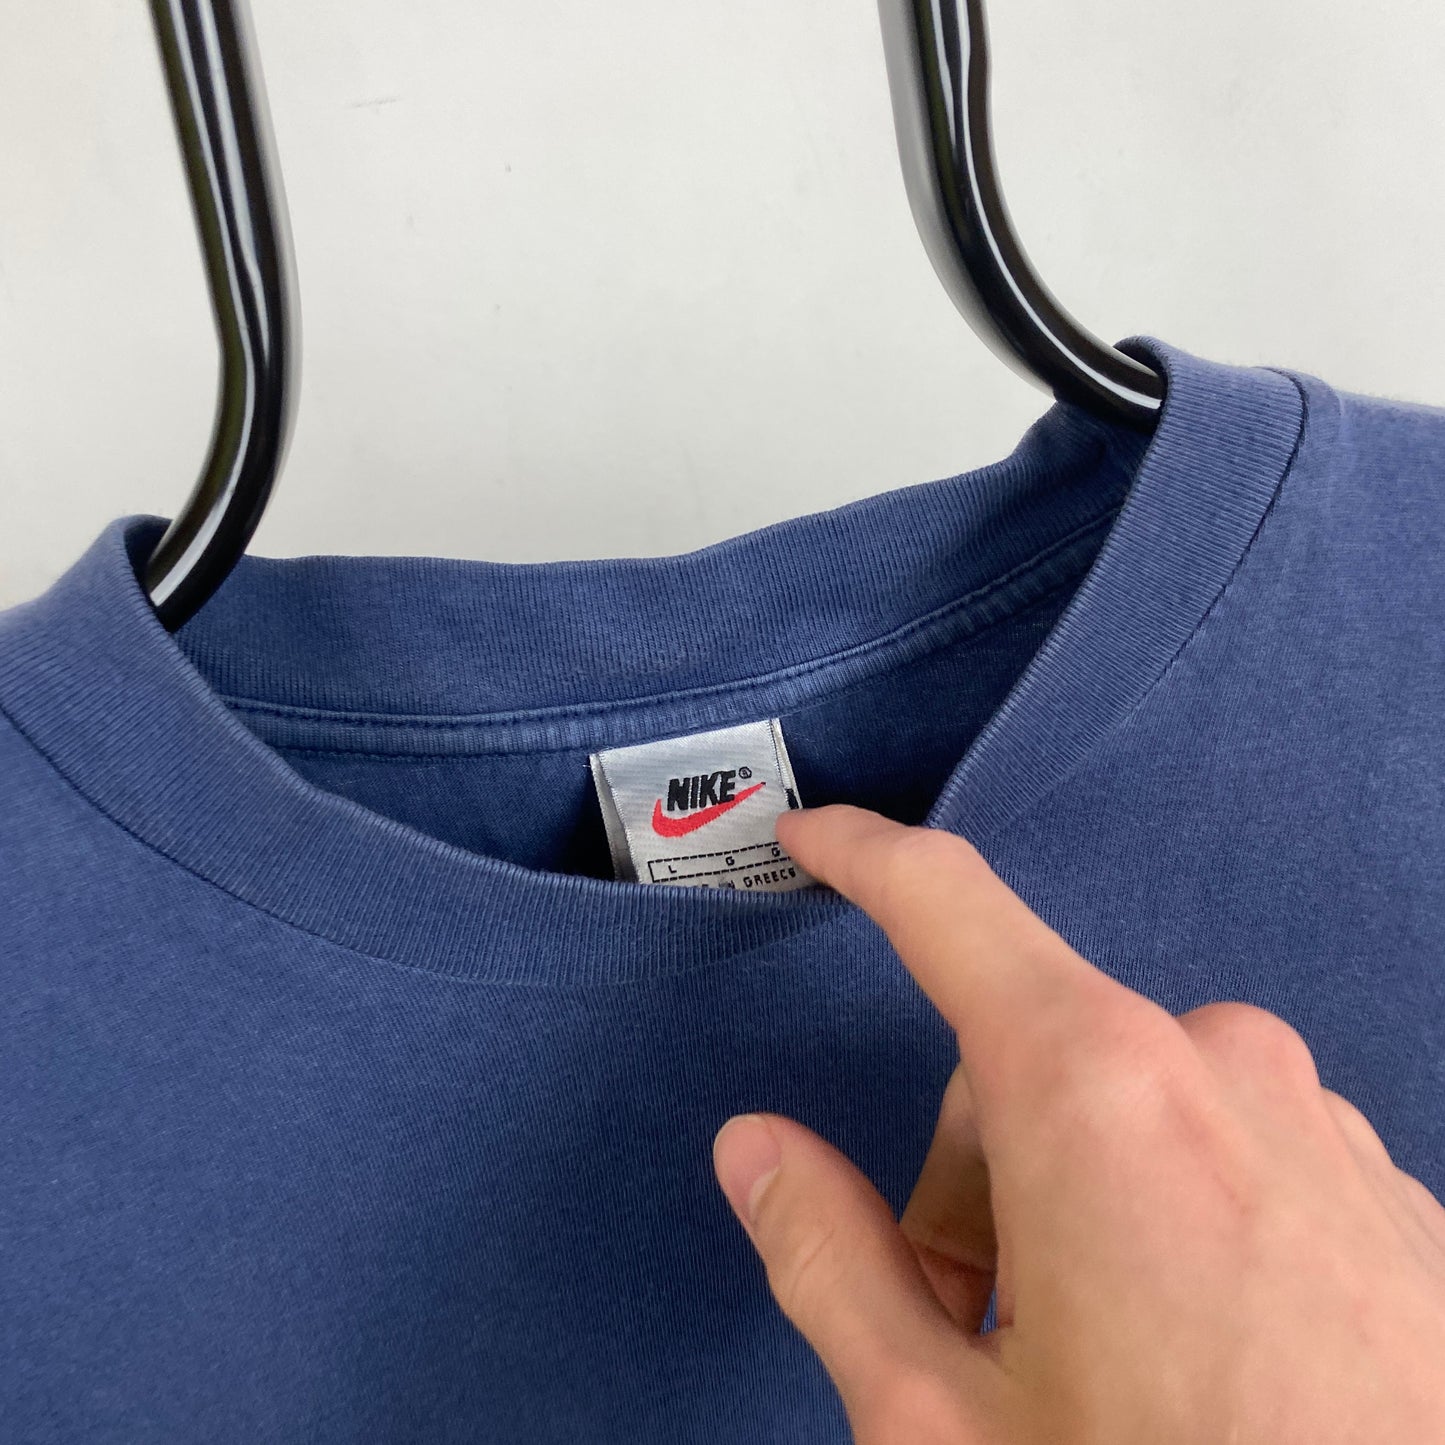 90s Nike Swoosh T-Shirt Blue Large